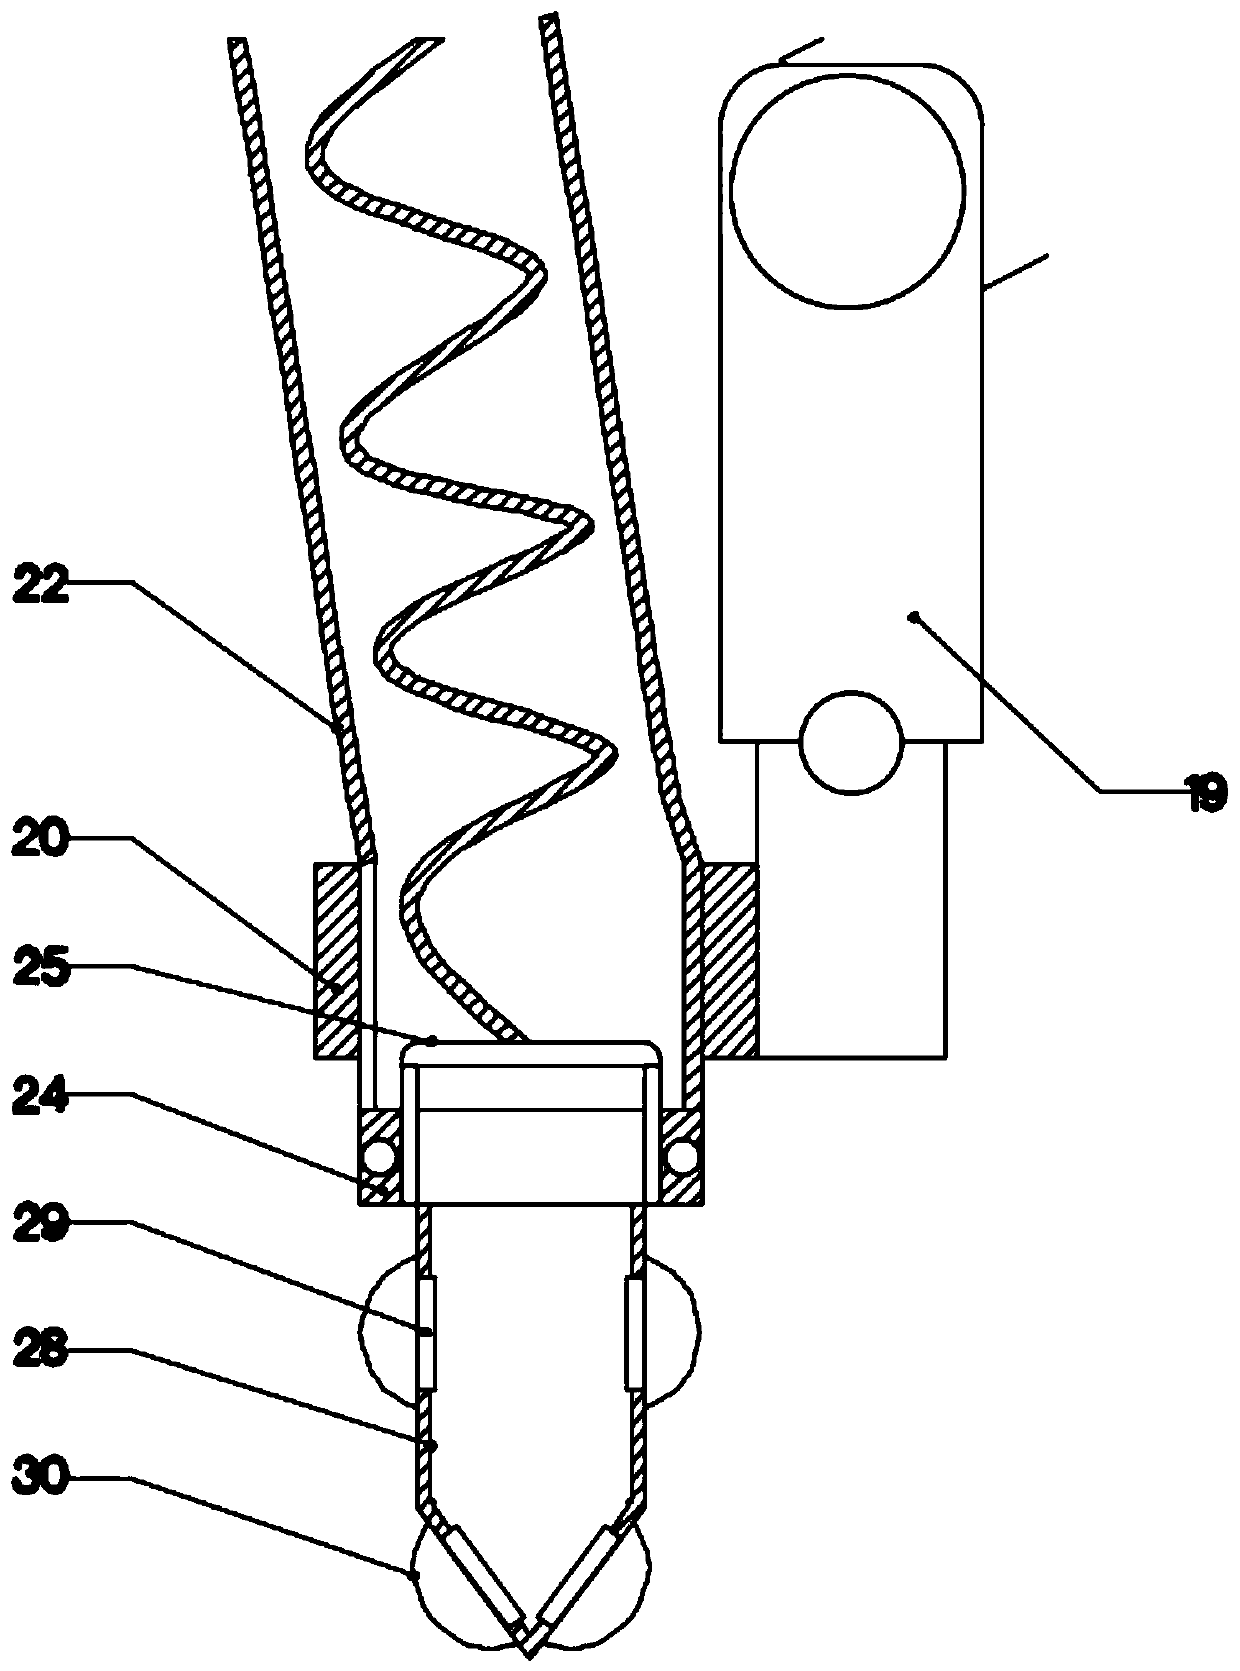 Position adjustable dredging device